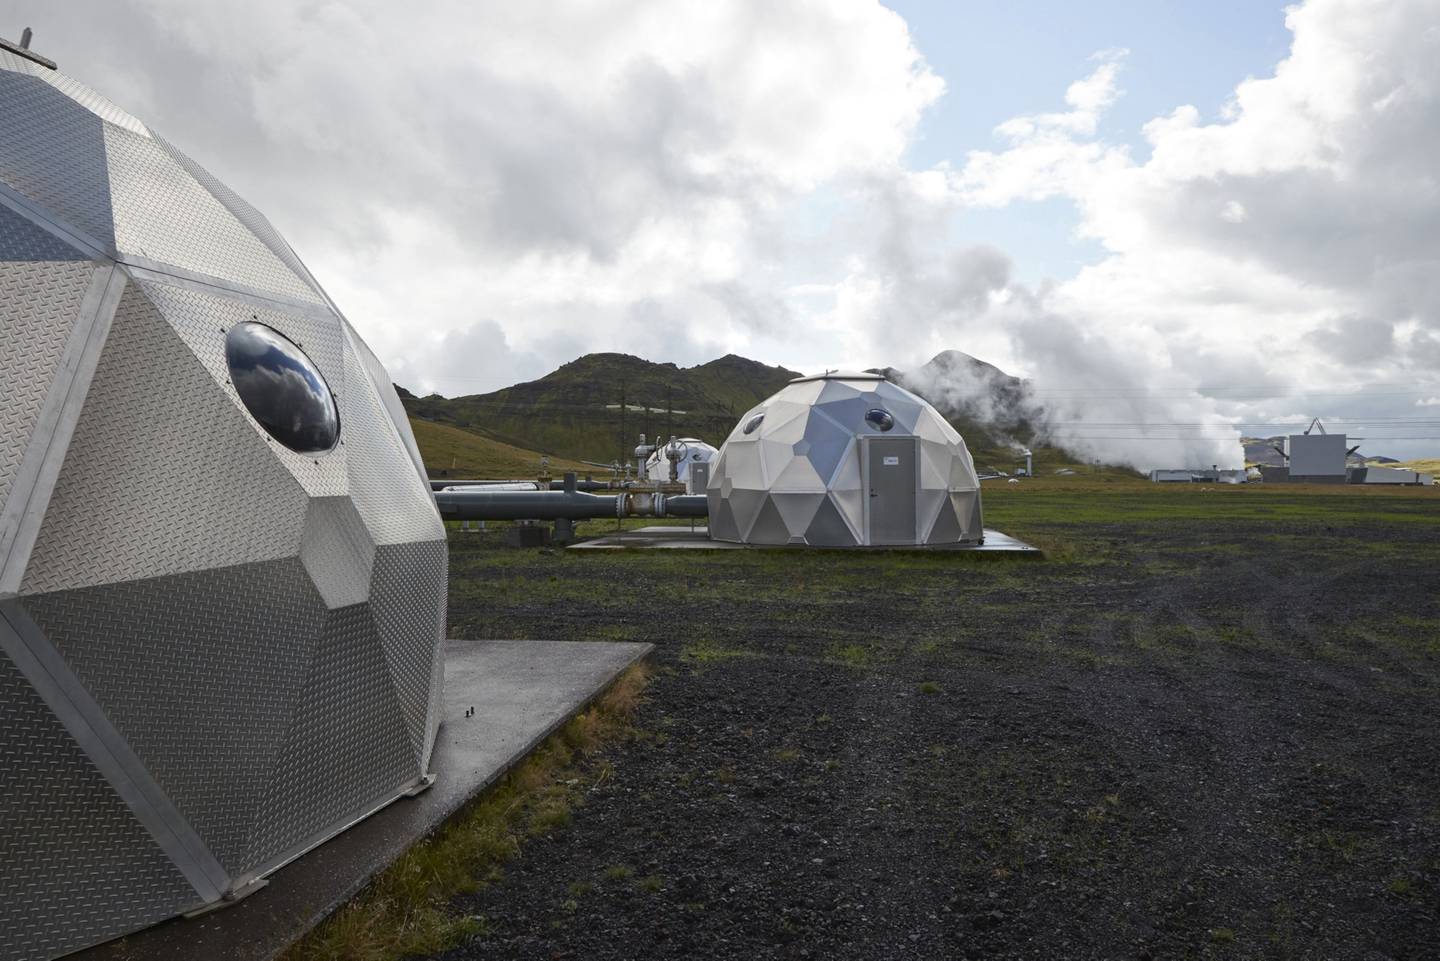 Esferas, operadas por Carbfix, que contienen tecnología para almacenar dióxido de carbono bajo tierra, en Hellisheidi, Islandia.dfd